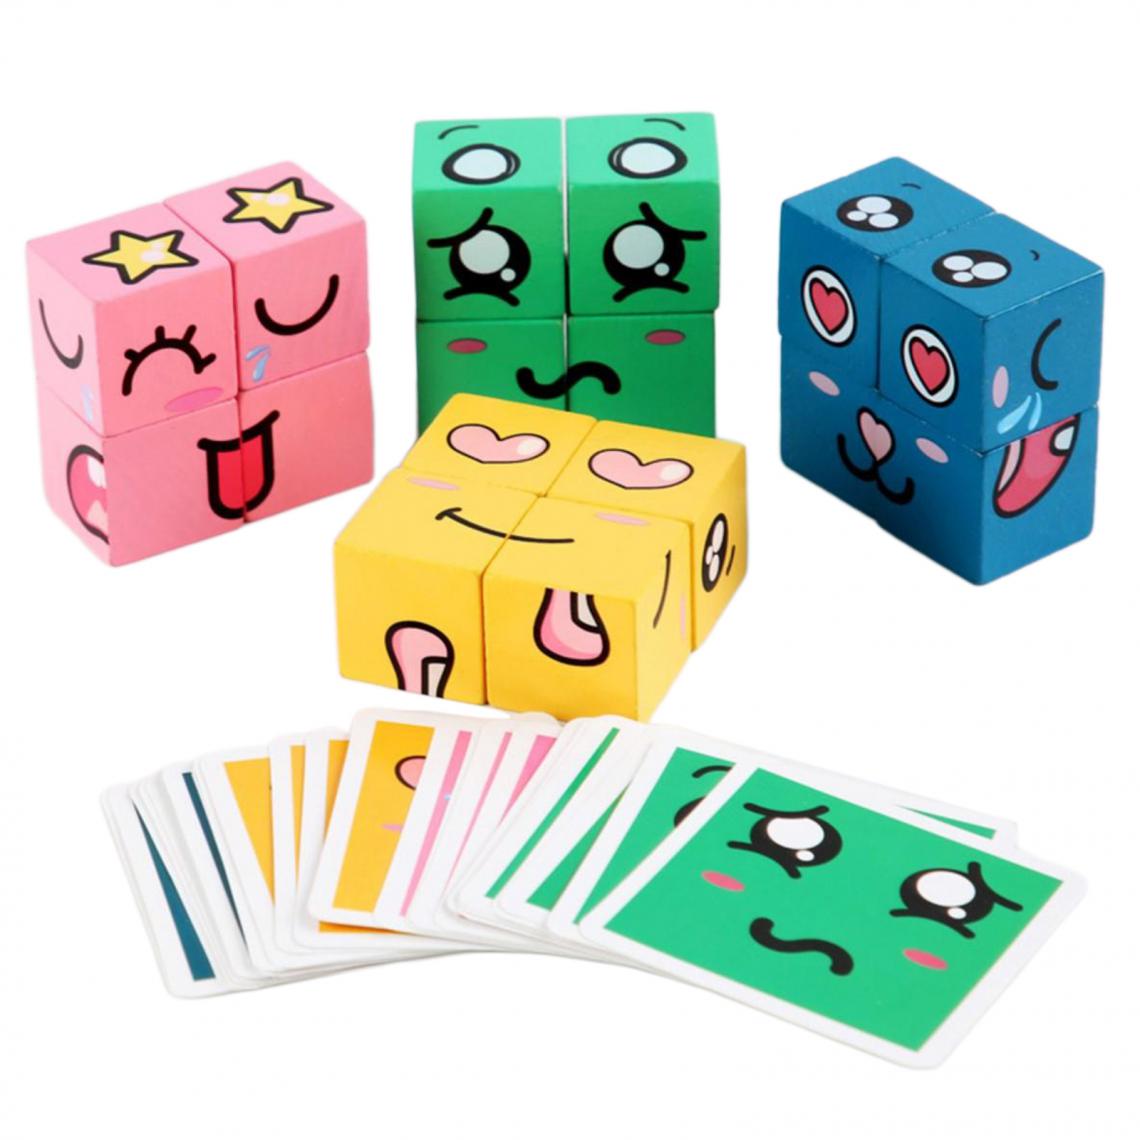 marque generique - En bois Cube Drôle Expression Du Visage Puzzle Cube Coloré Blocs de Construction Jouets Woode Jigsaw - Jeux d'éveil